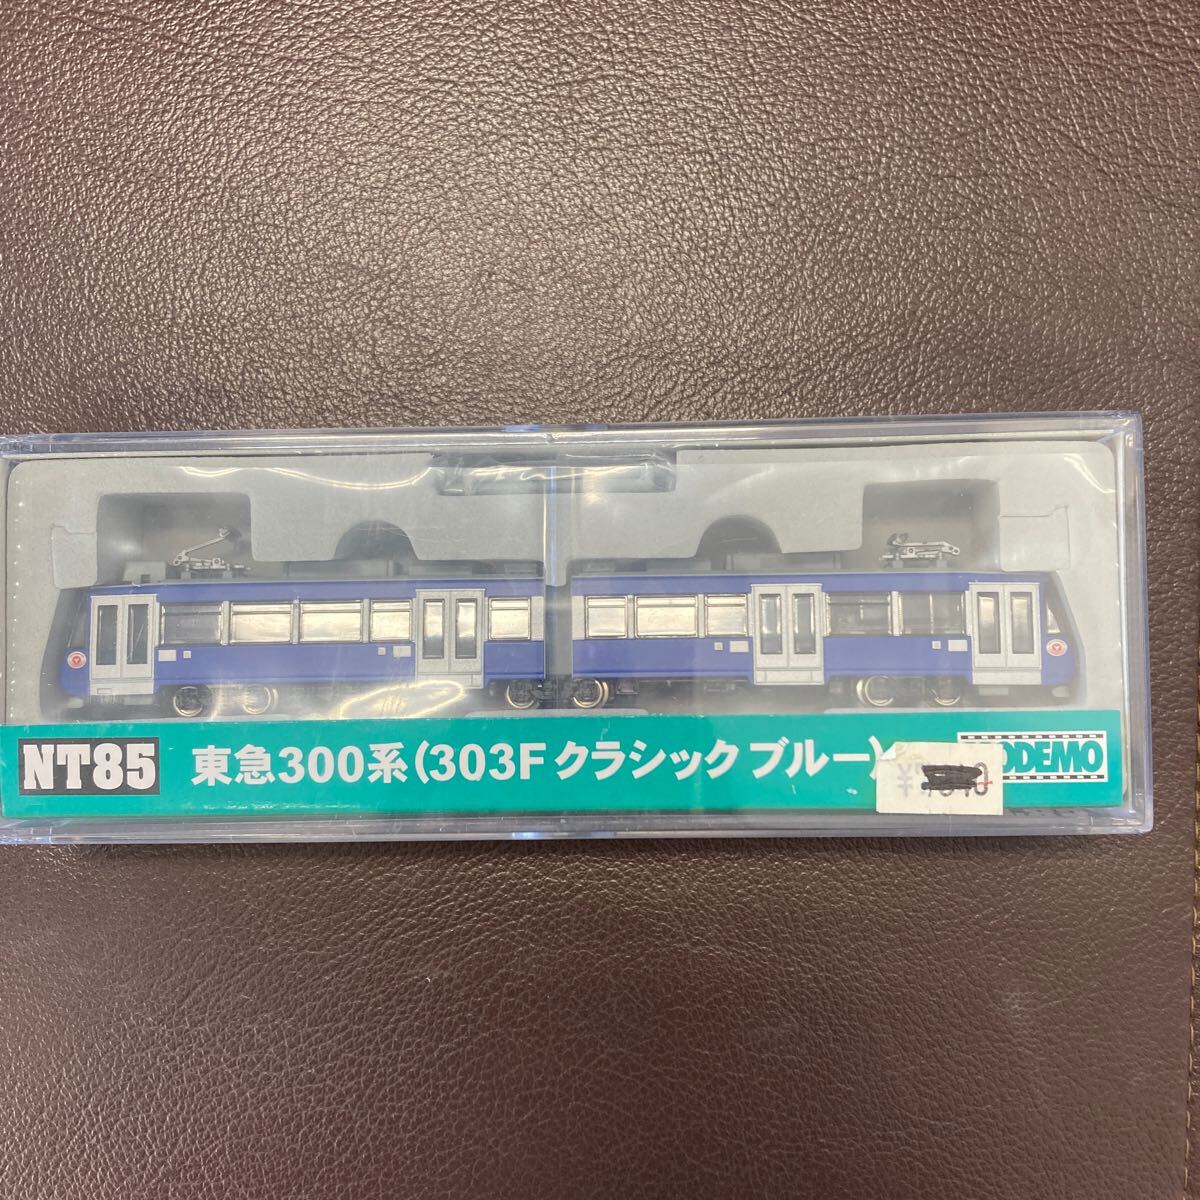 MODEMO 東急300系(303F クラシックブルー)の画像1